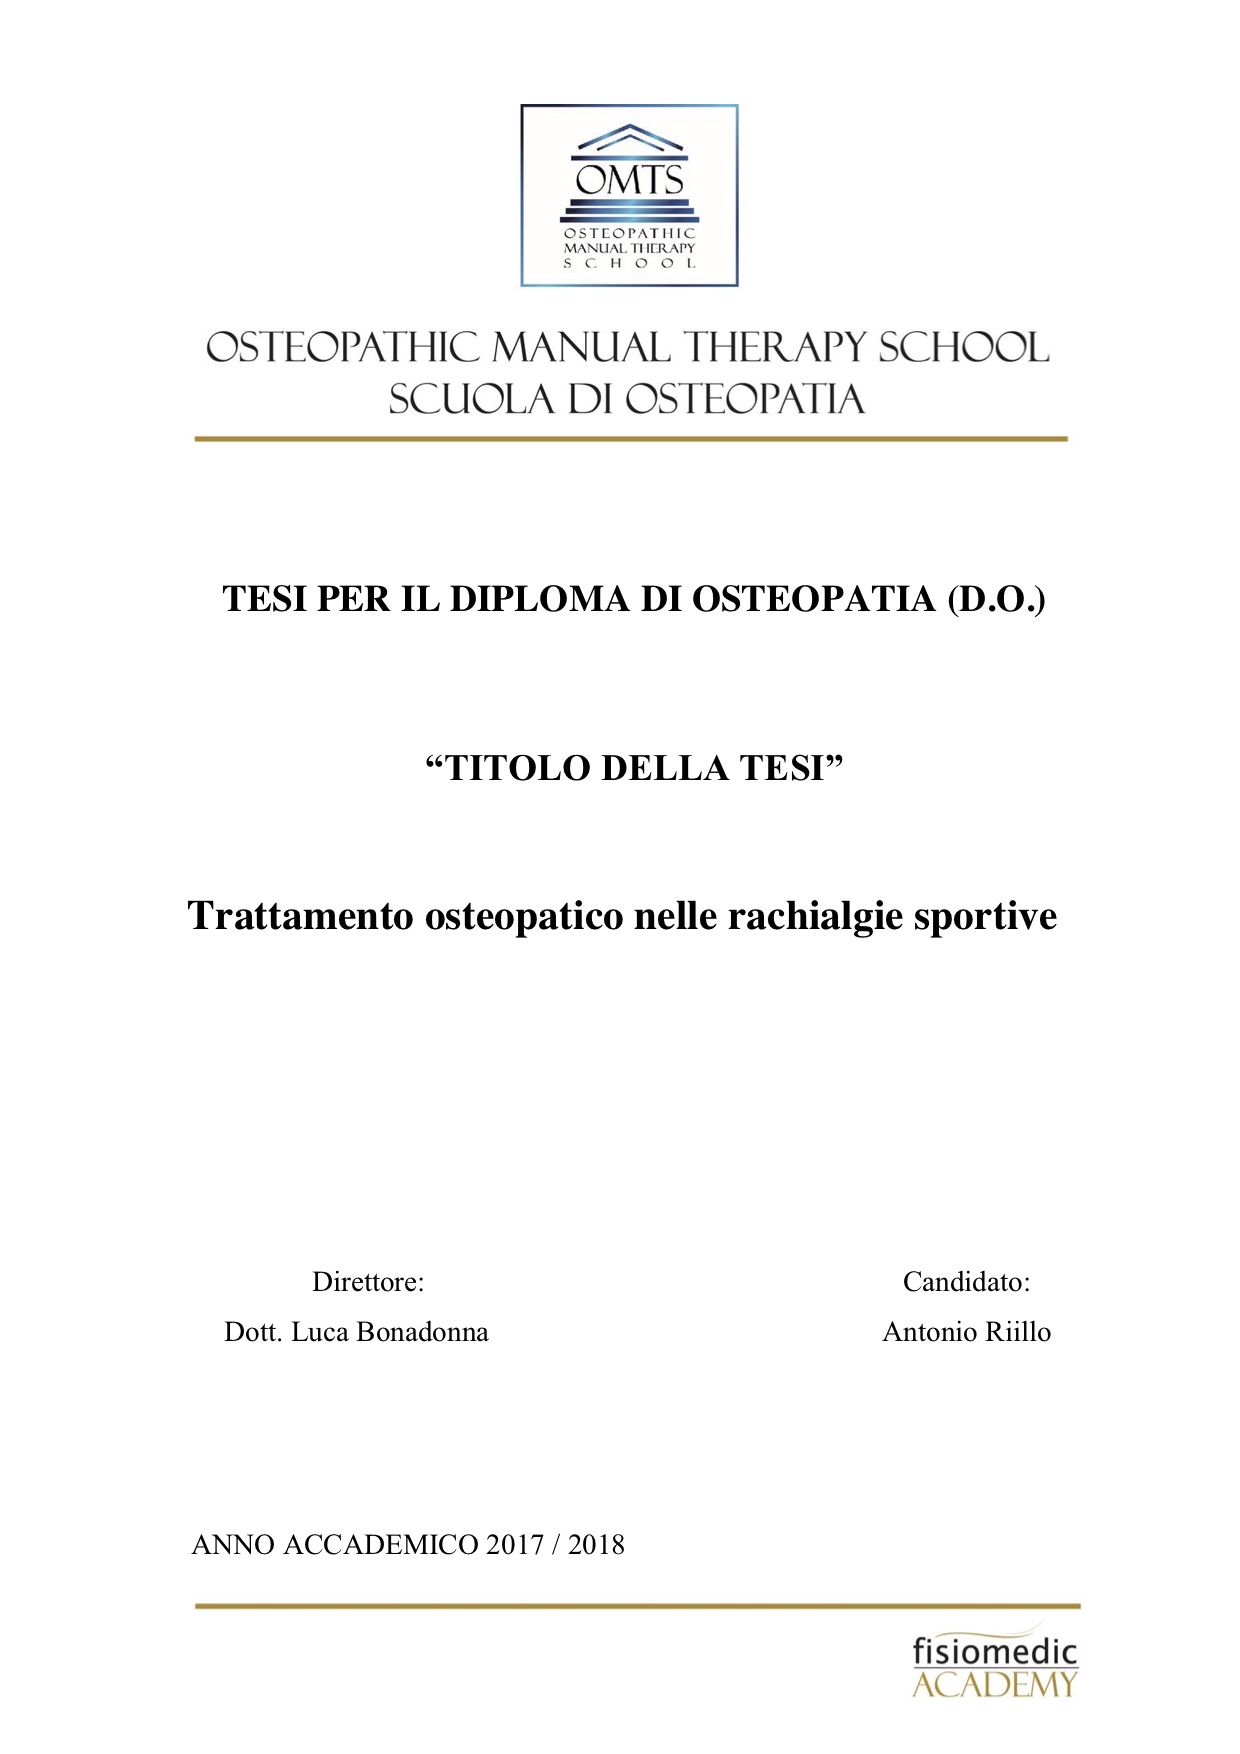 Antonio Rillo Tesi Diploma Osteopatia 2018